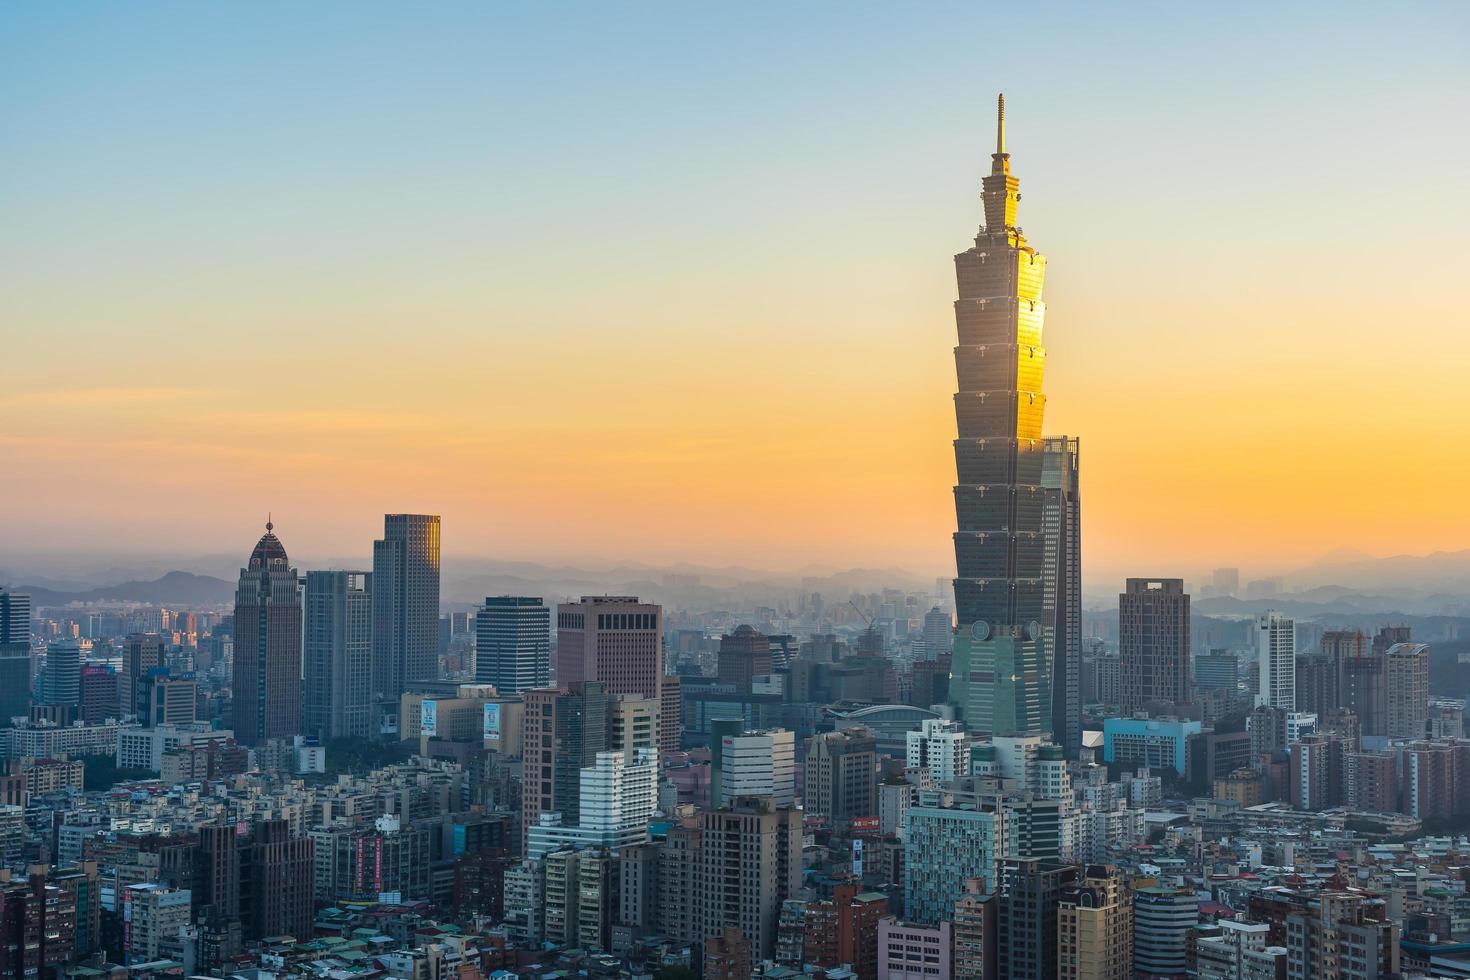 Torre Taipei 101 en la ciudad de Taipei, Taiwán foto